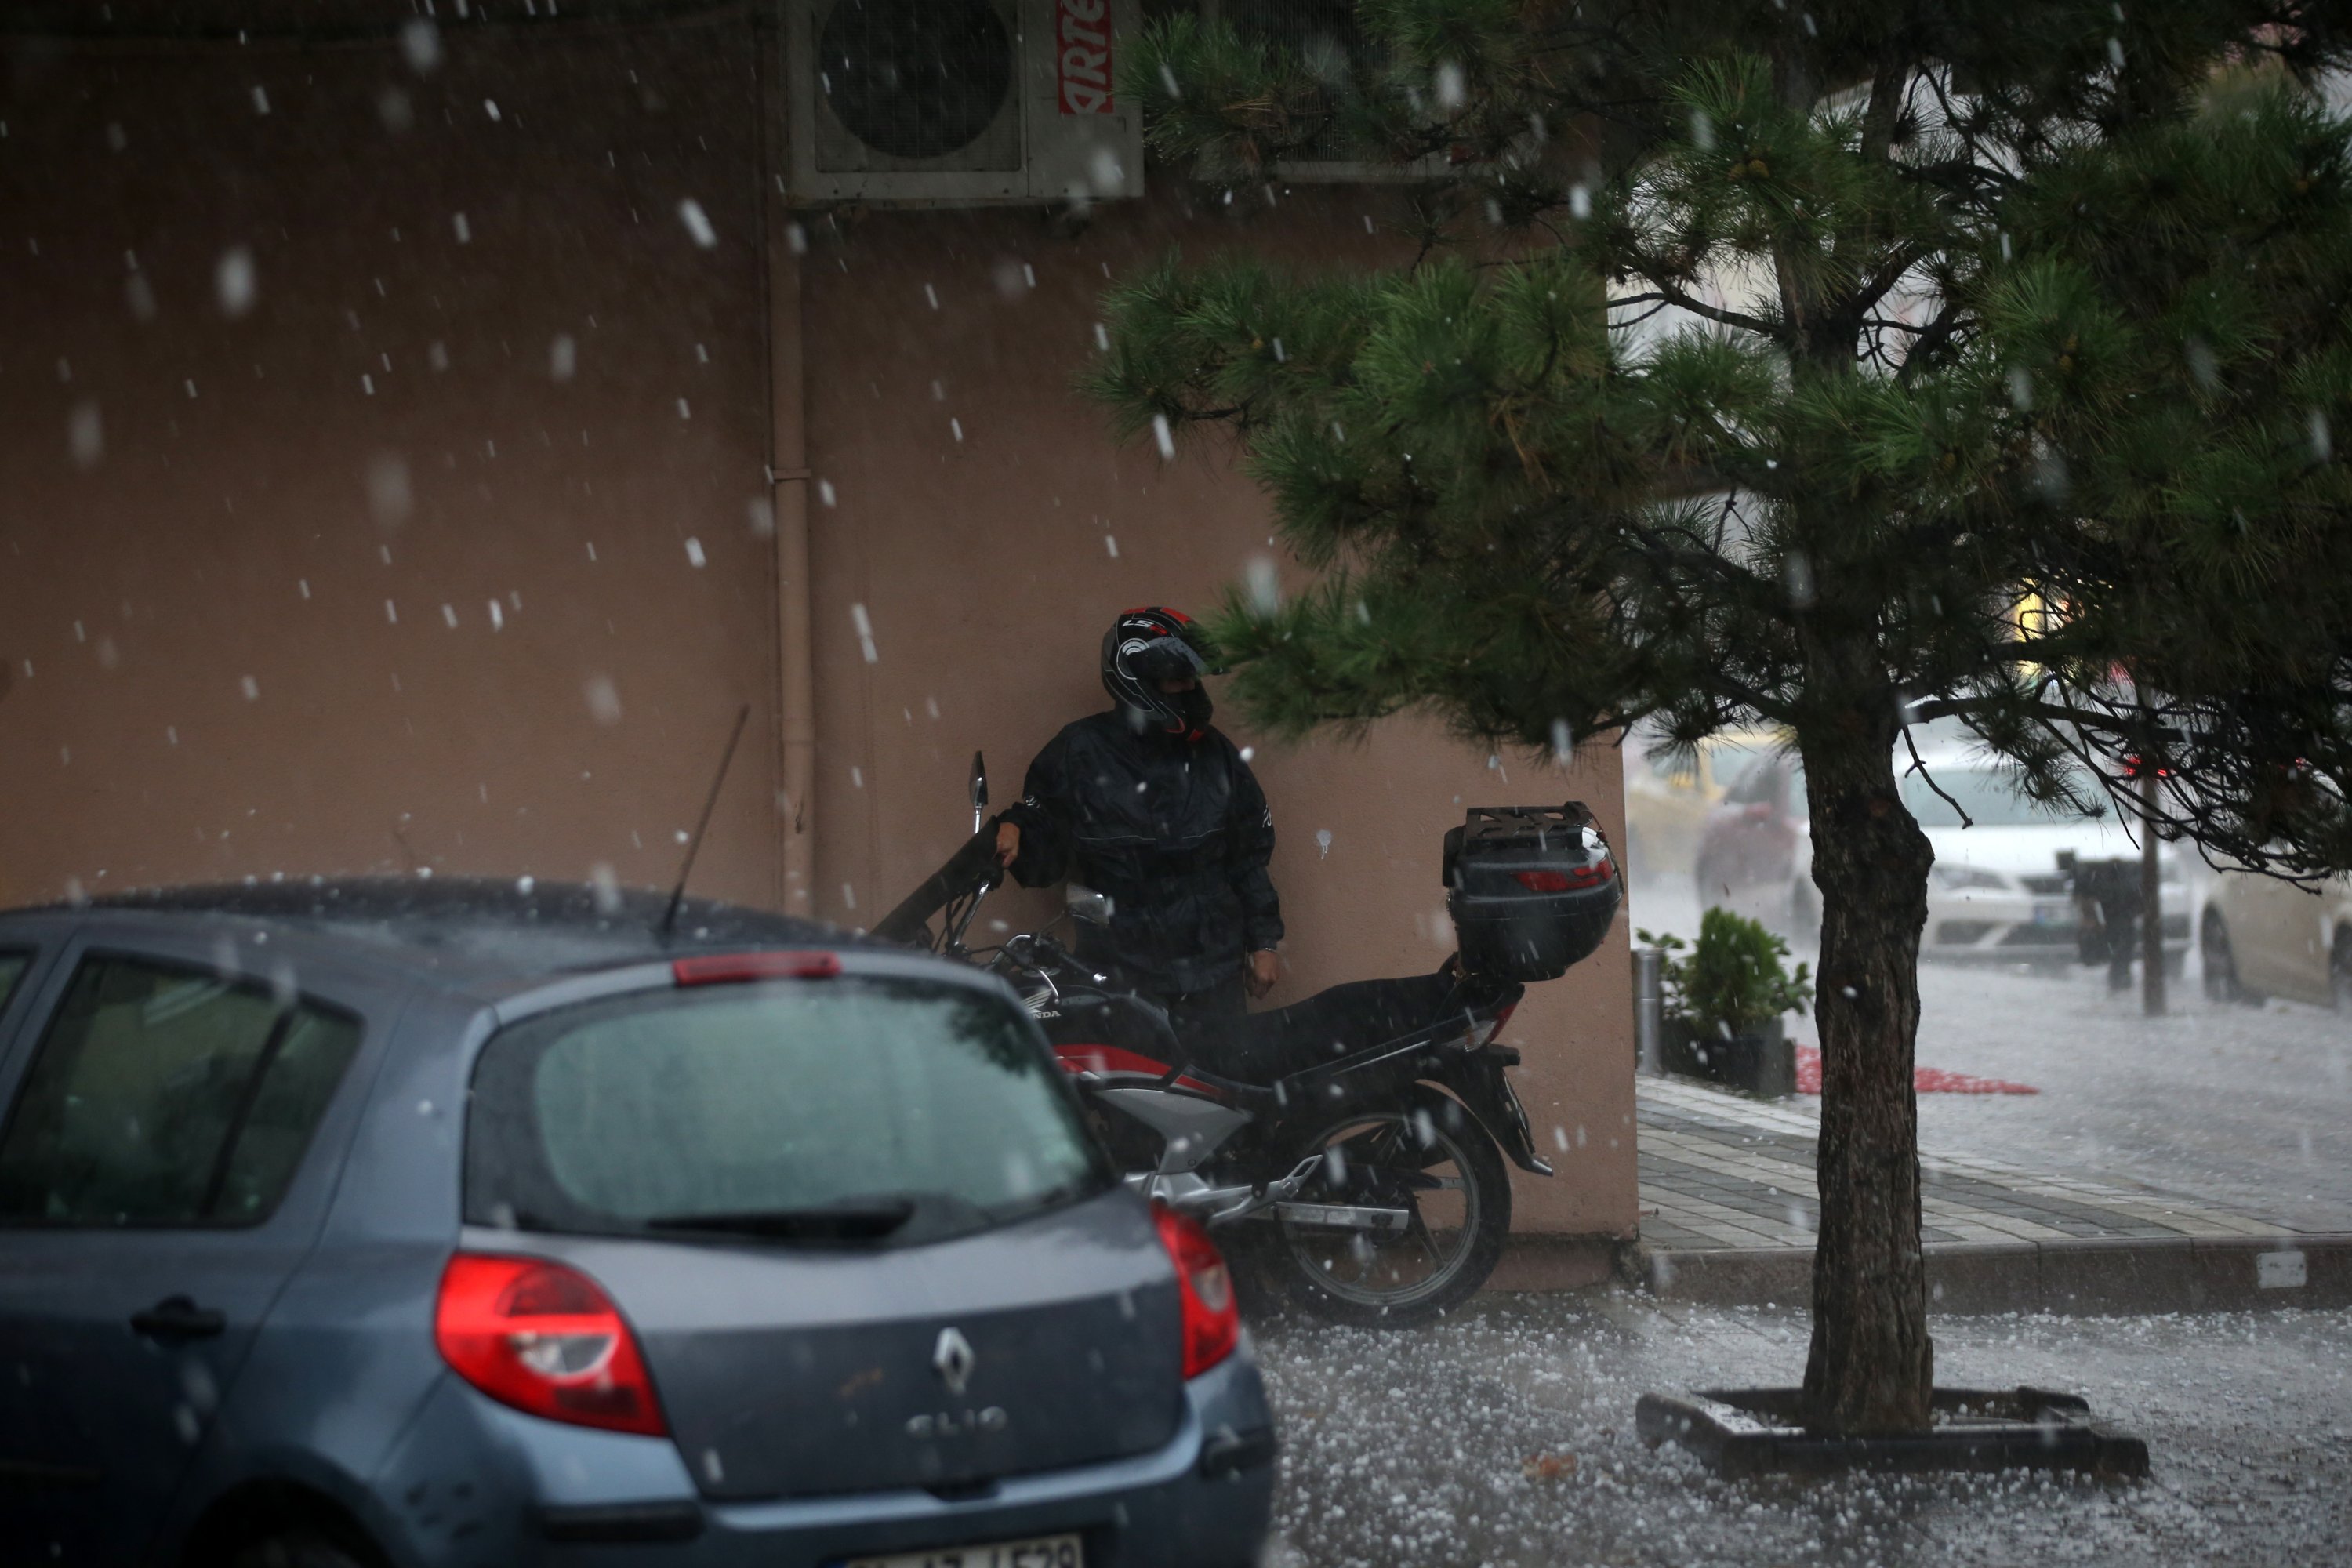  Një shofer motoçikletash qëndron pranë një ndërtese apartamenti për të mbrojtur veten nga breshëri, në rrethin Üsküdar të Stambollit, Turqi, 29 shtator, 2020. (AA Photo)